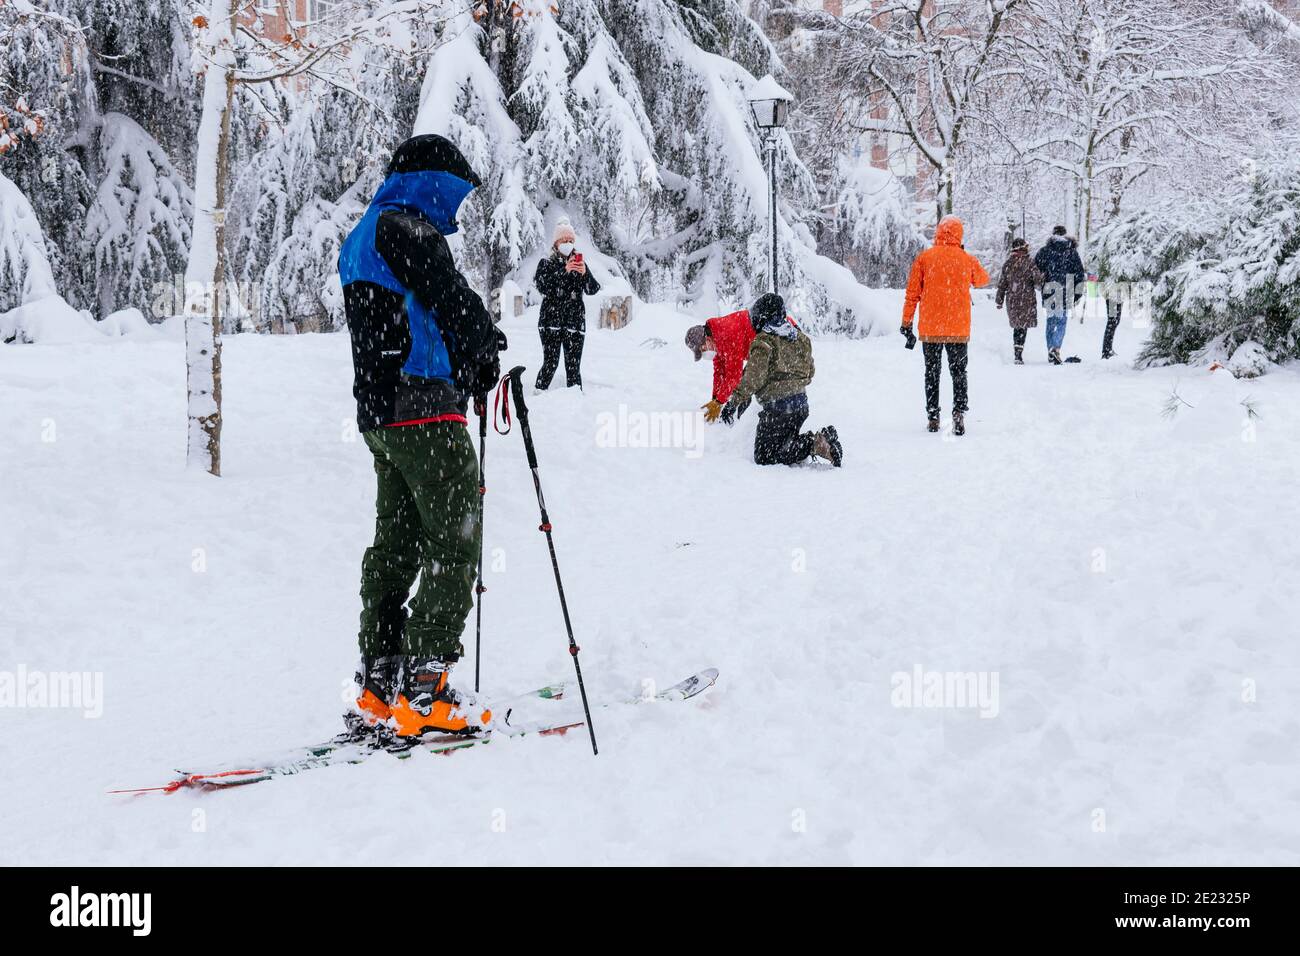 Homme skier dans un parc du centre de Madrid pendant une forte chute de neige. Forte chute de neige de Filomena. Madrid, Espagne Banque D'Images